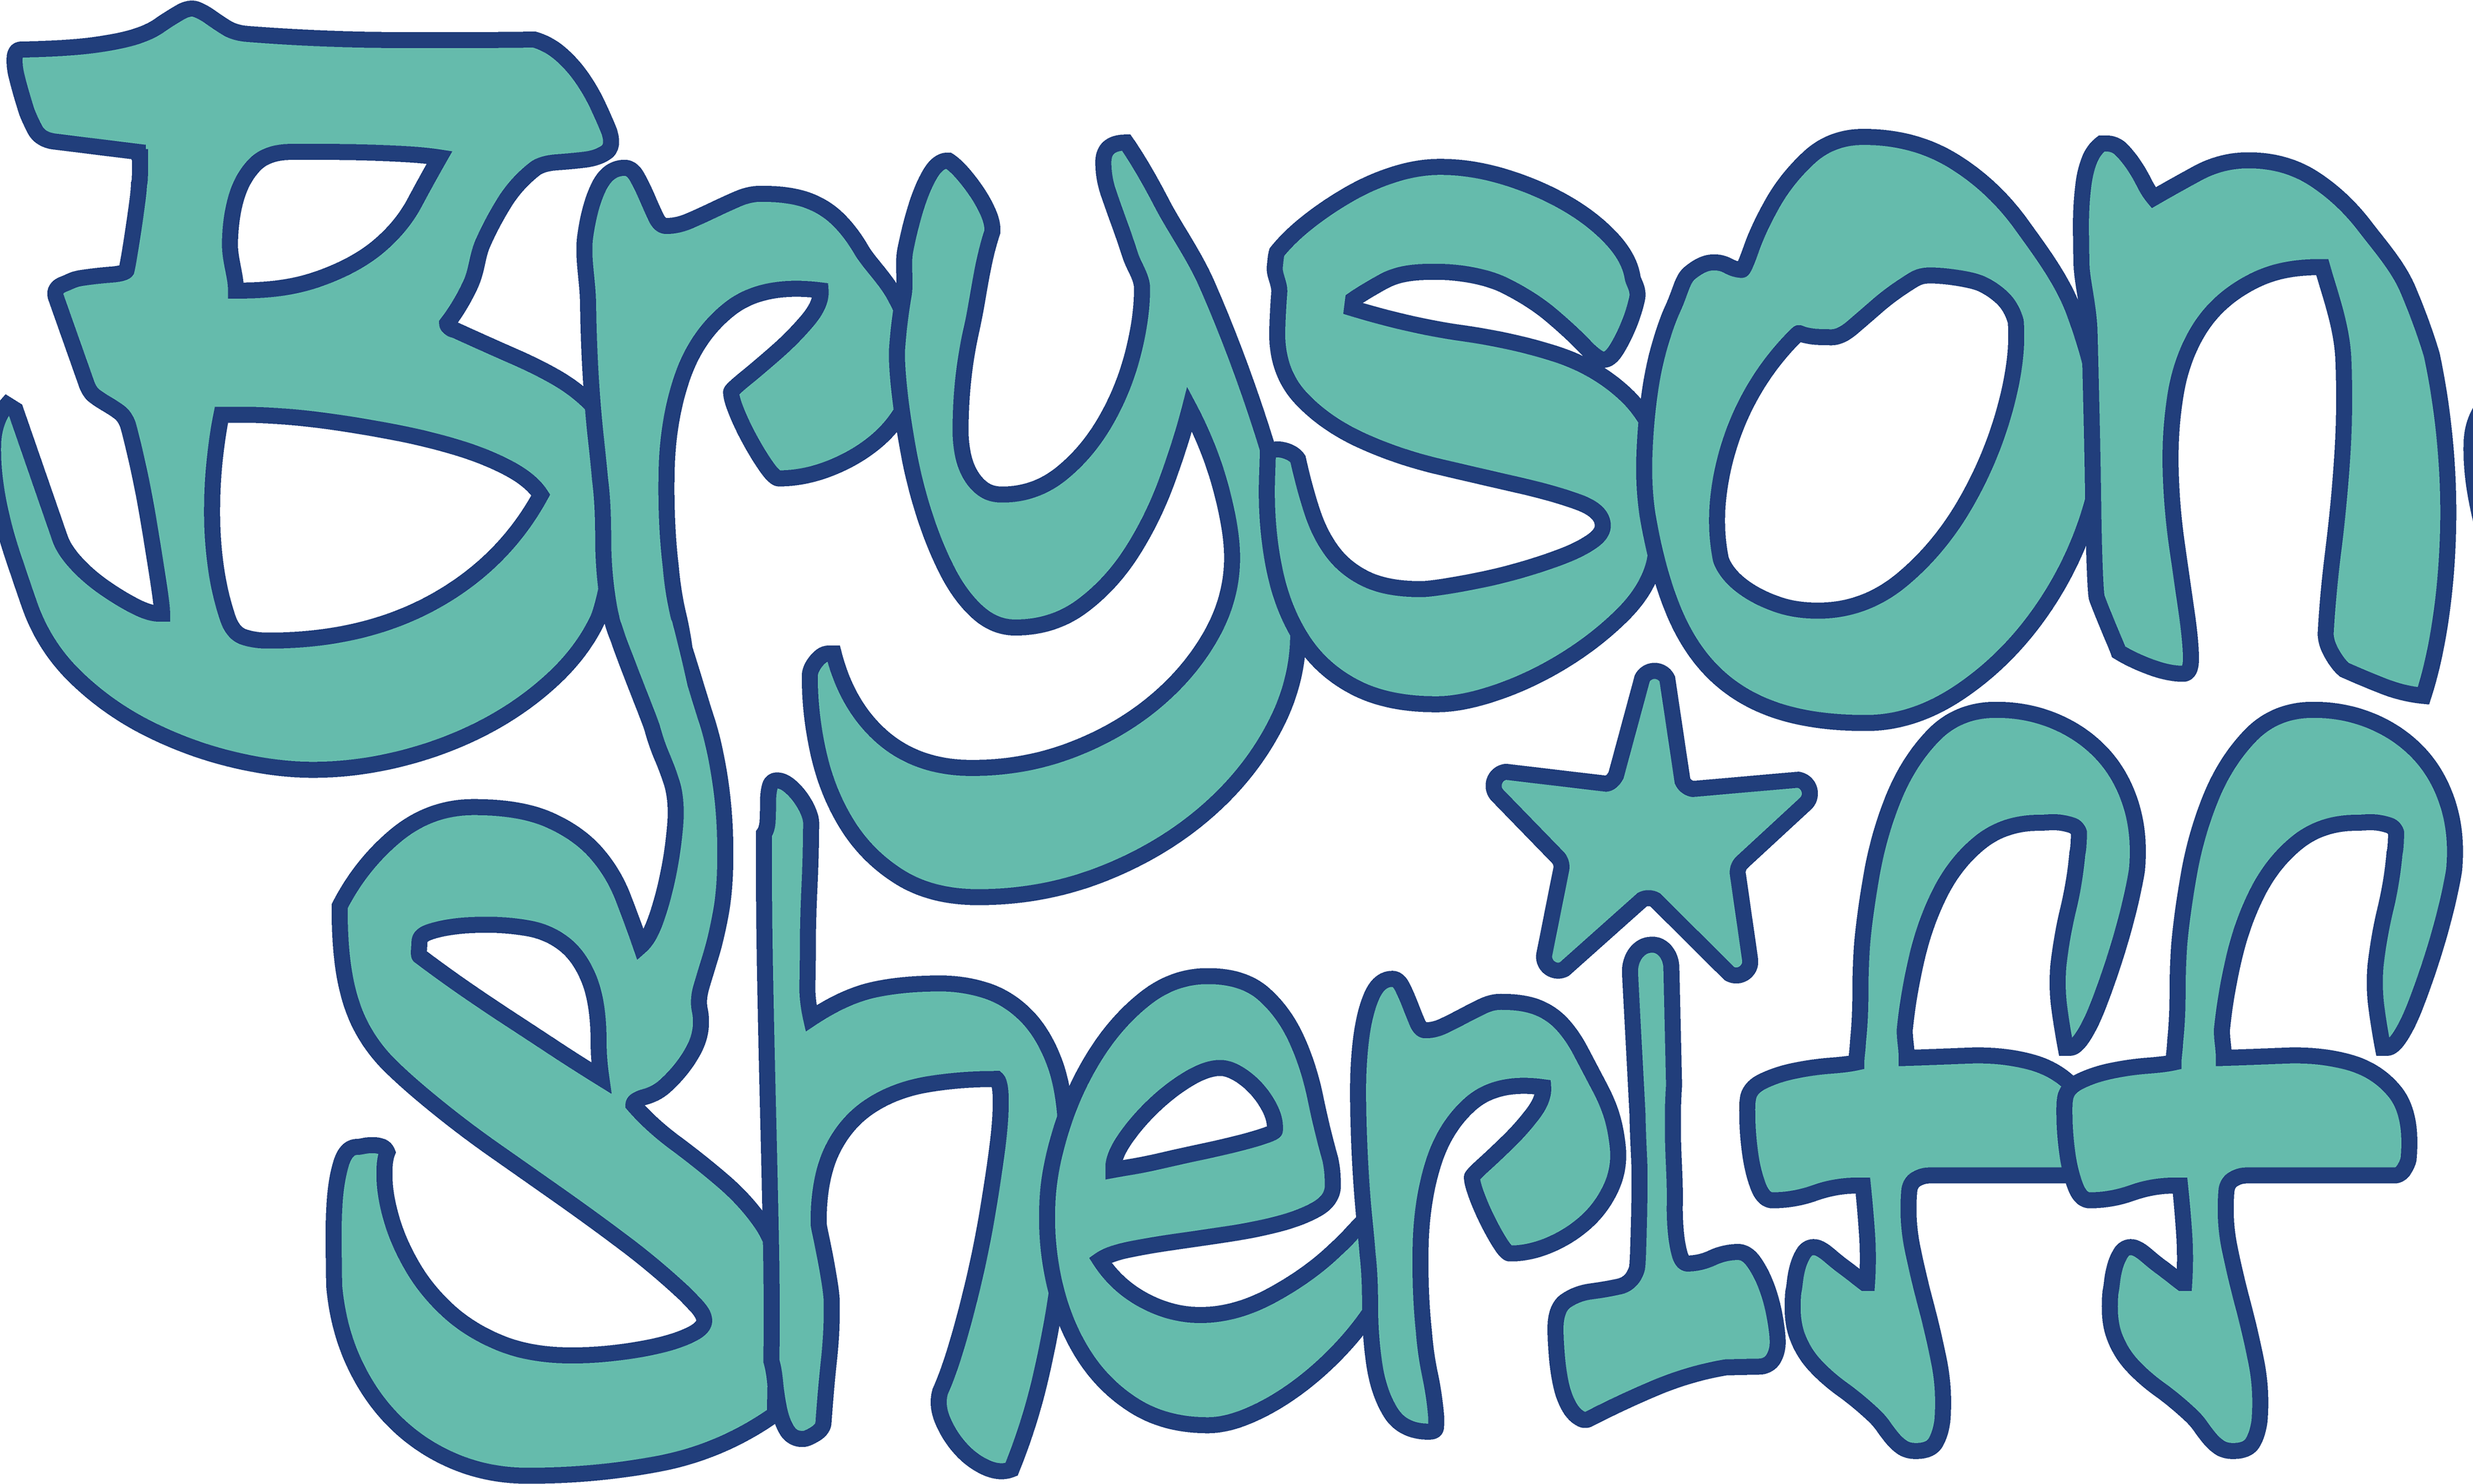 Bryson Sheriff